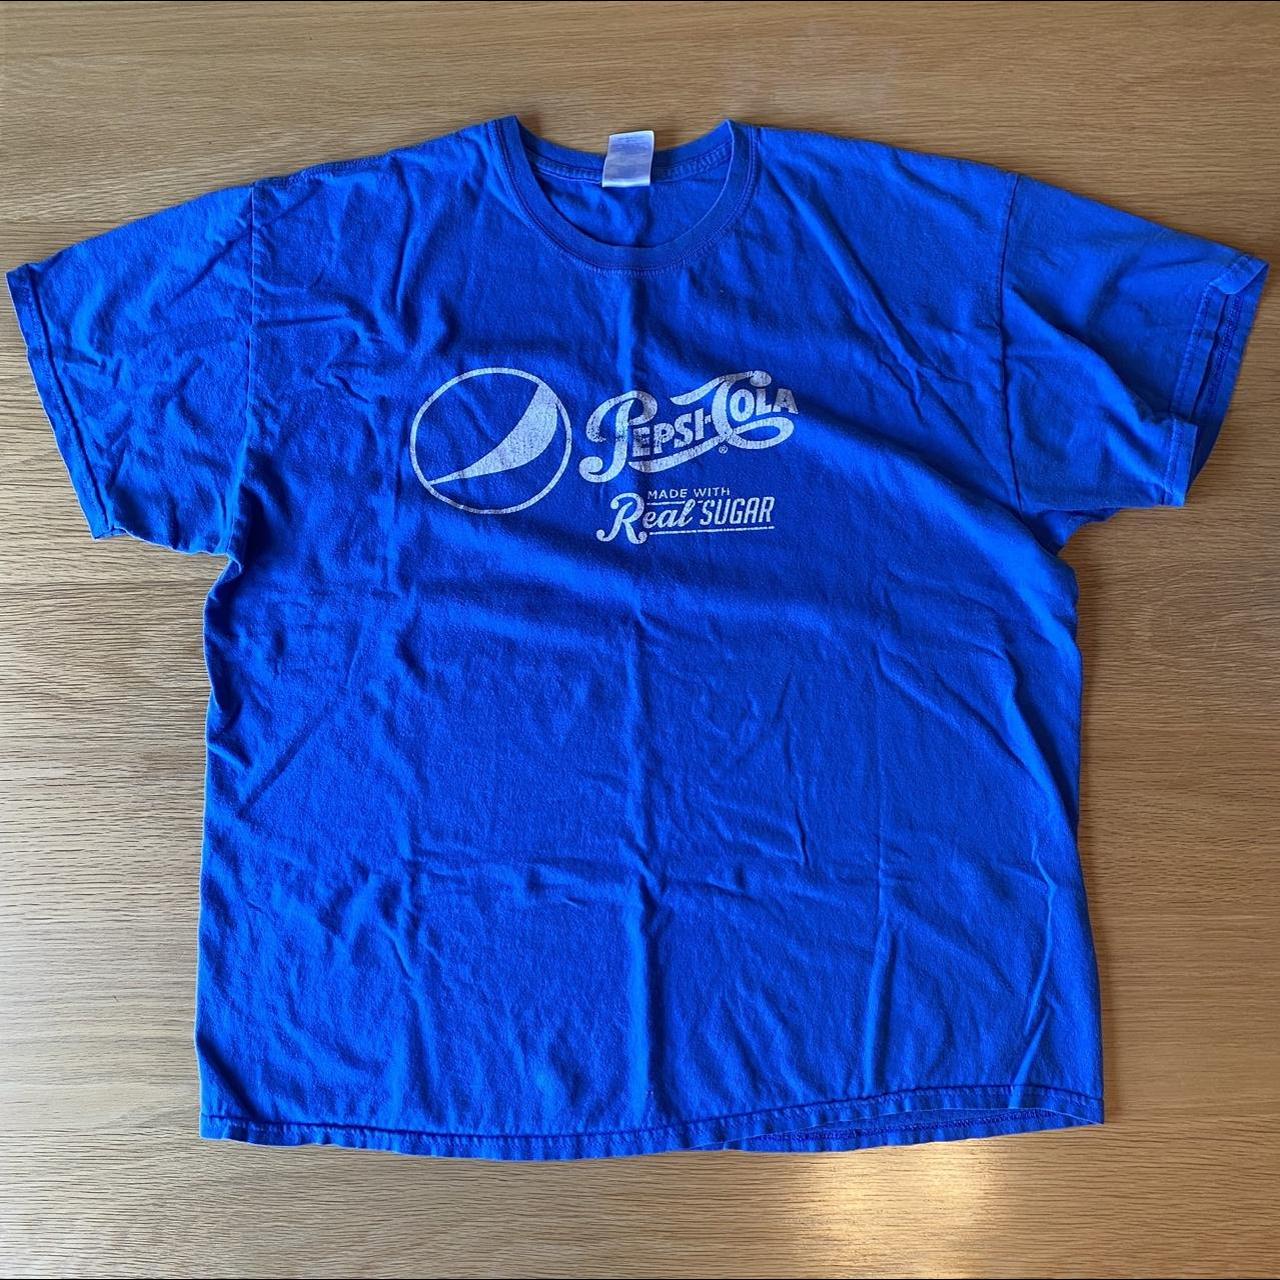 Pep&Co Men's Blue T-shirt | Depop